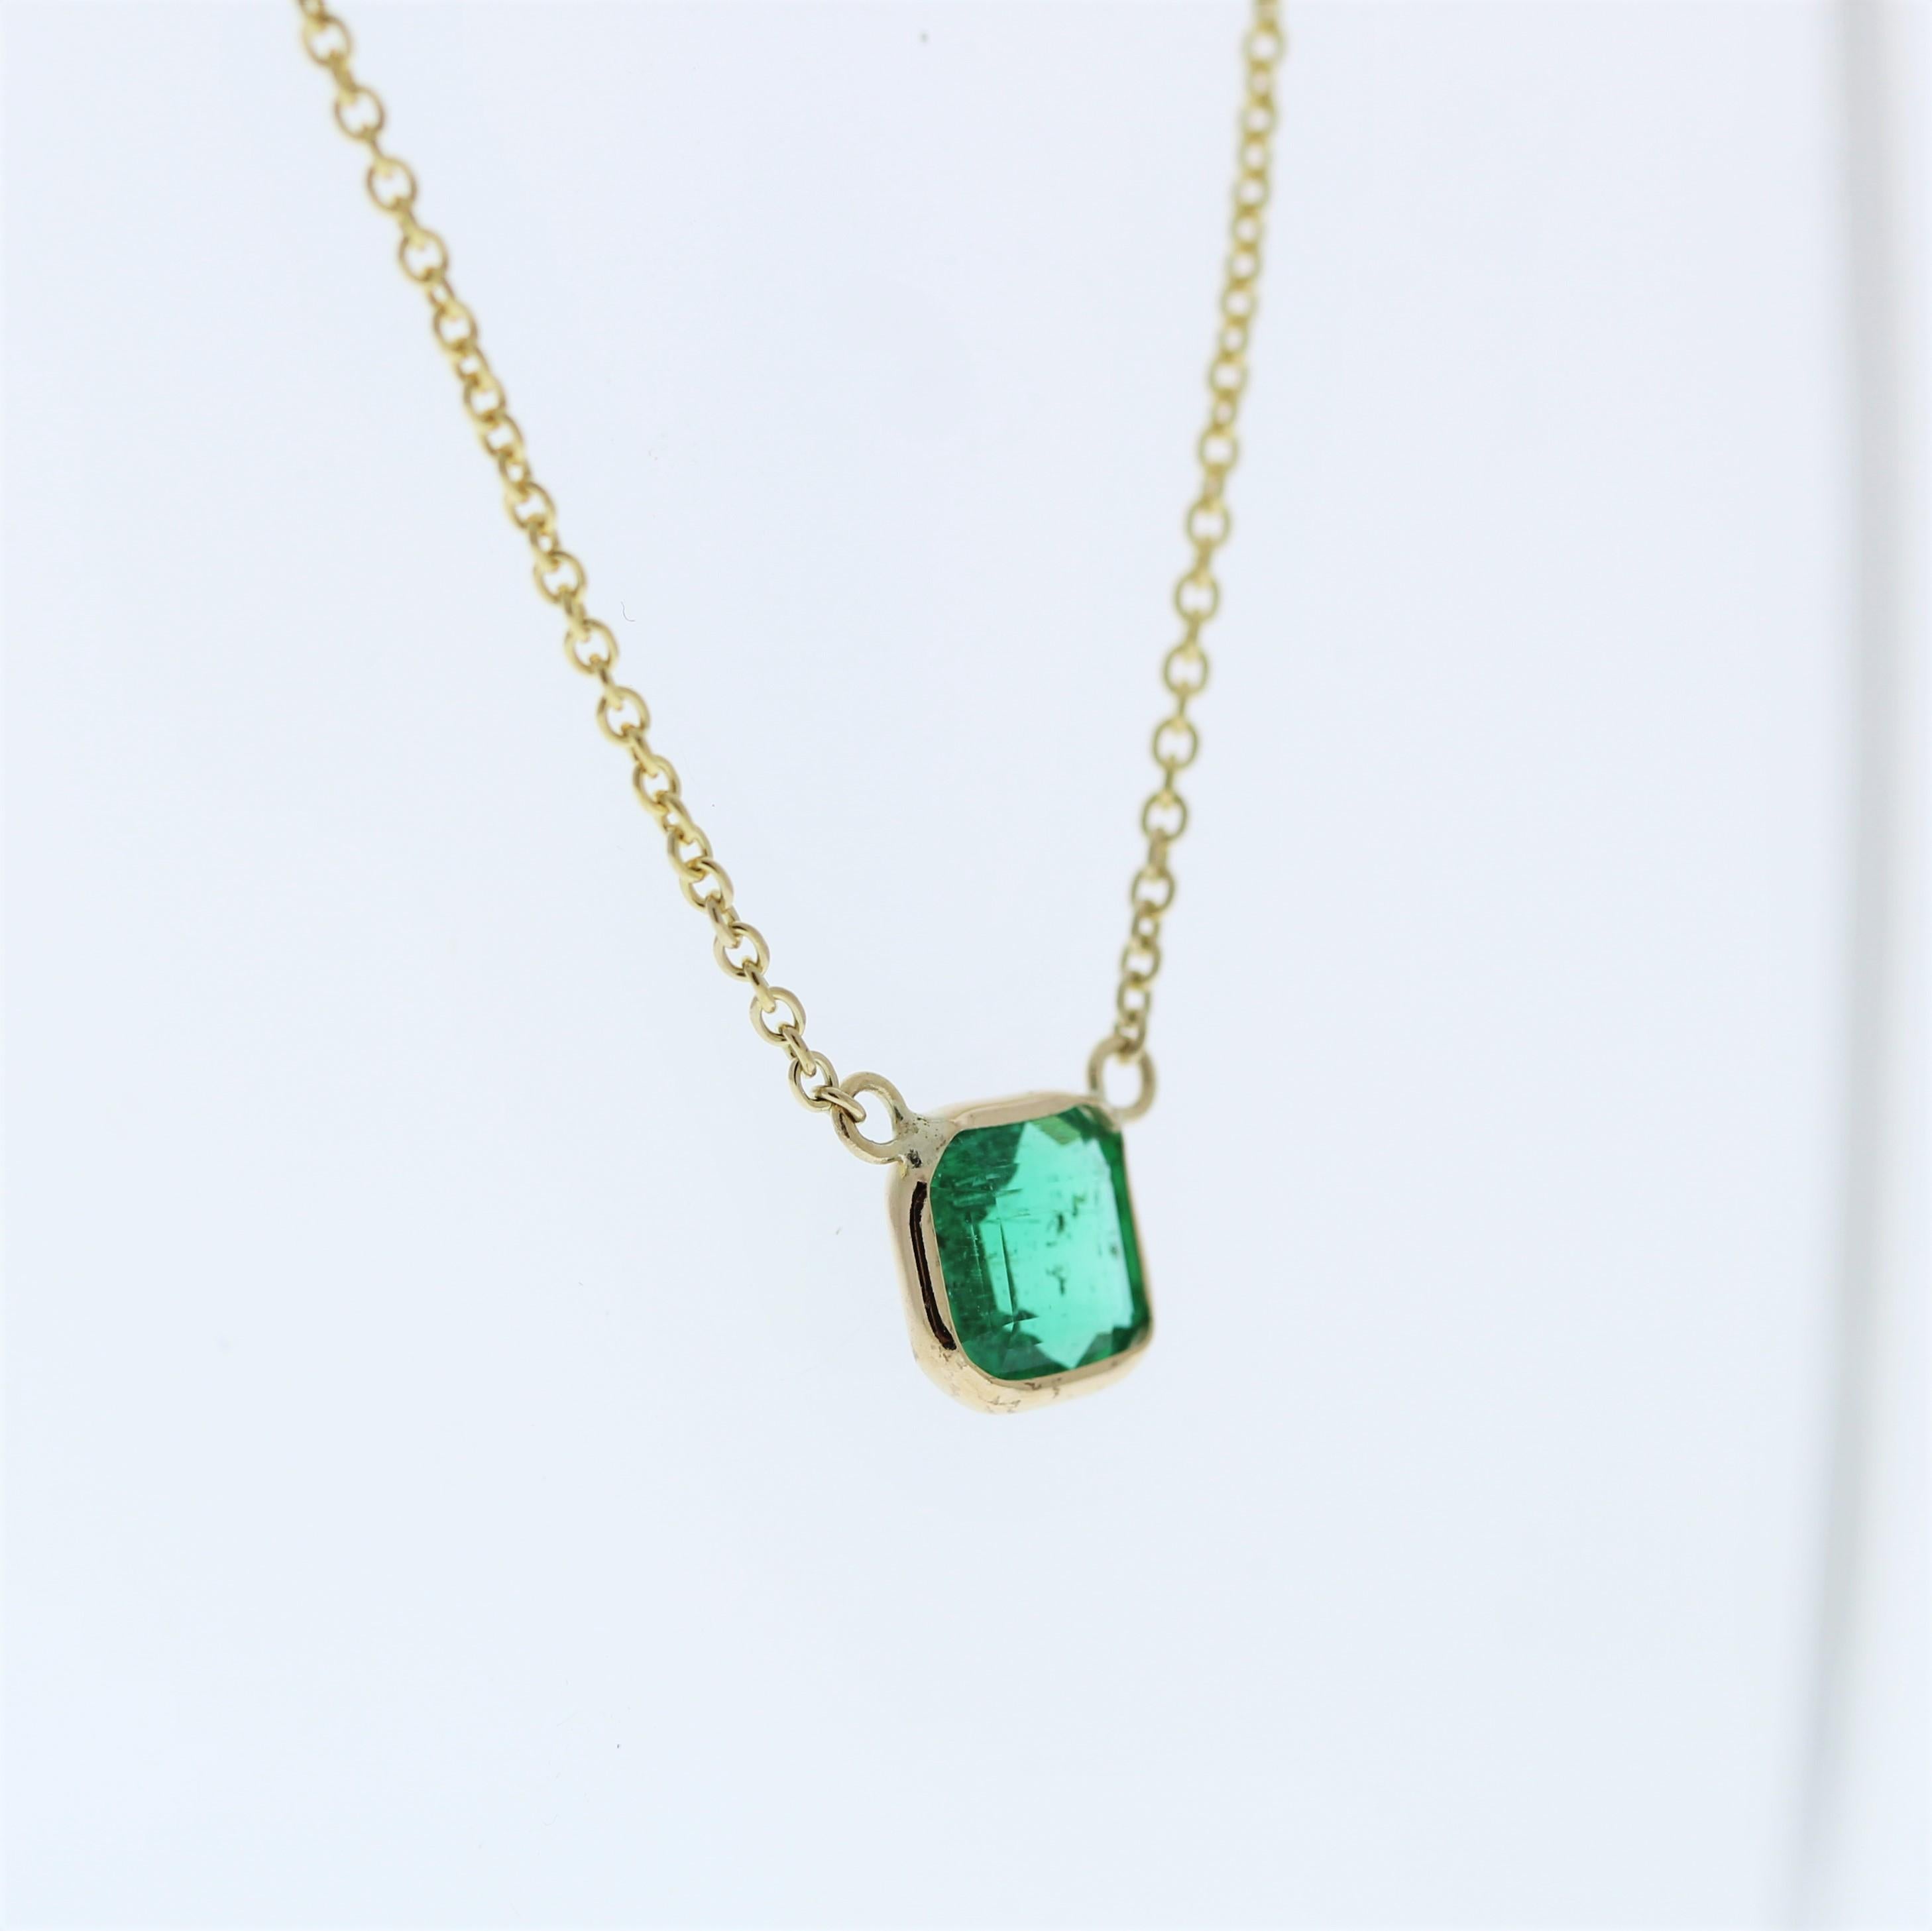 Die Halskette besteht aus einem grünen Smaragd im Asscher-Schliff von 0,91 Karat, der in einem Anhänger oder einer Fassung aus 14 Karat Gelbgold gefasst ist. Die geometrische Schönheit des Asscher-Schliffs in Kombination mit der leuchtend grünen